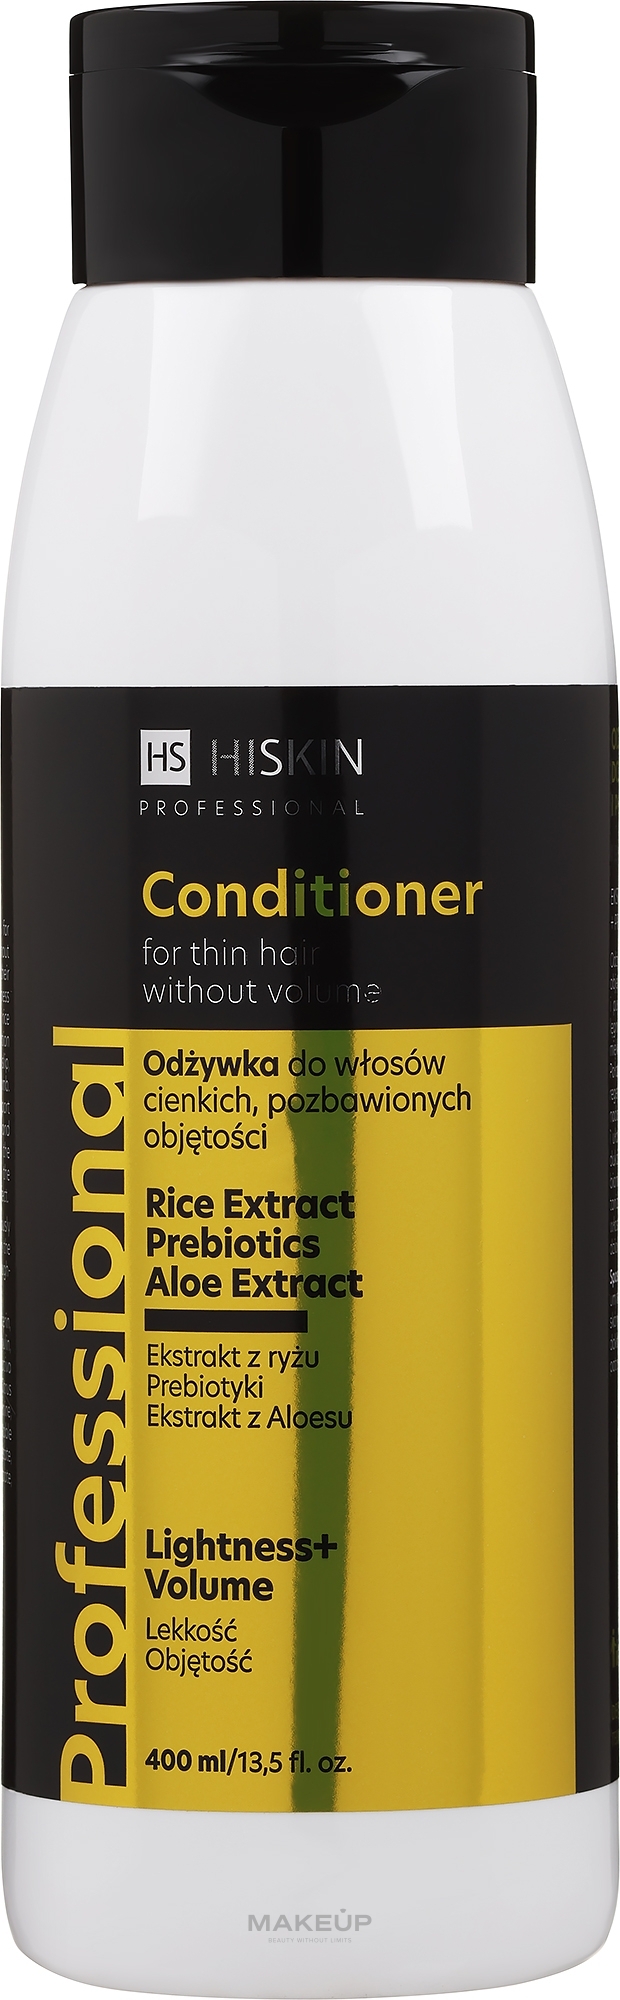 Pflegender Conditioner für dünnes Haar mit Reisextrakt, Aloe Vera und Präbiotika - HiSkin Professional Conditioner — Bild 400 ml